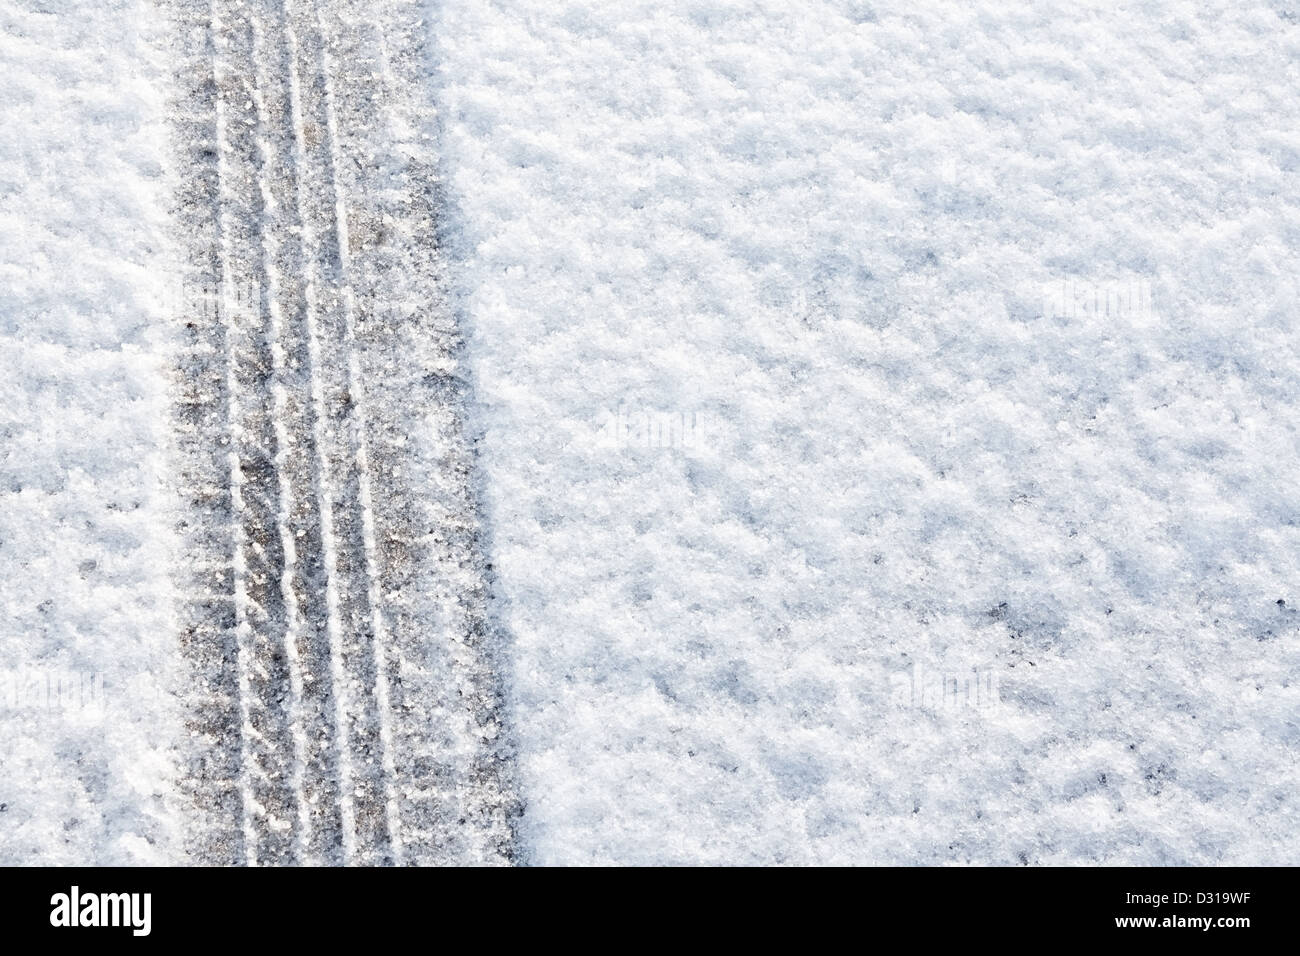 Reifenspuren in frischem Schnee eine große Kulisse für Rallyes oder vier Rad fahren Autos eingeprägt Stockfoto